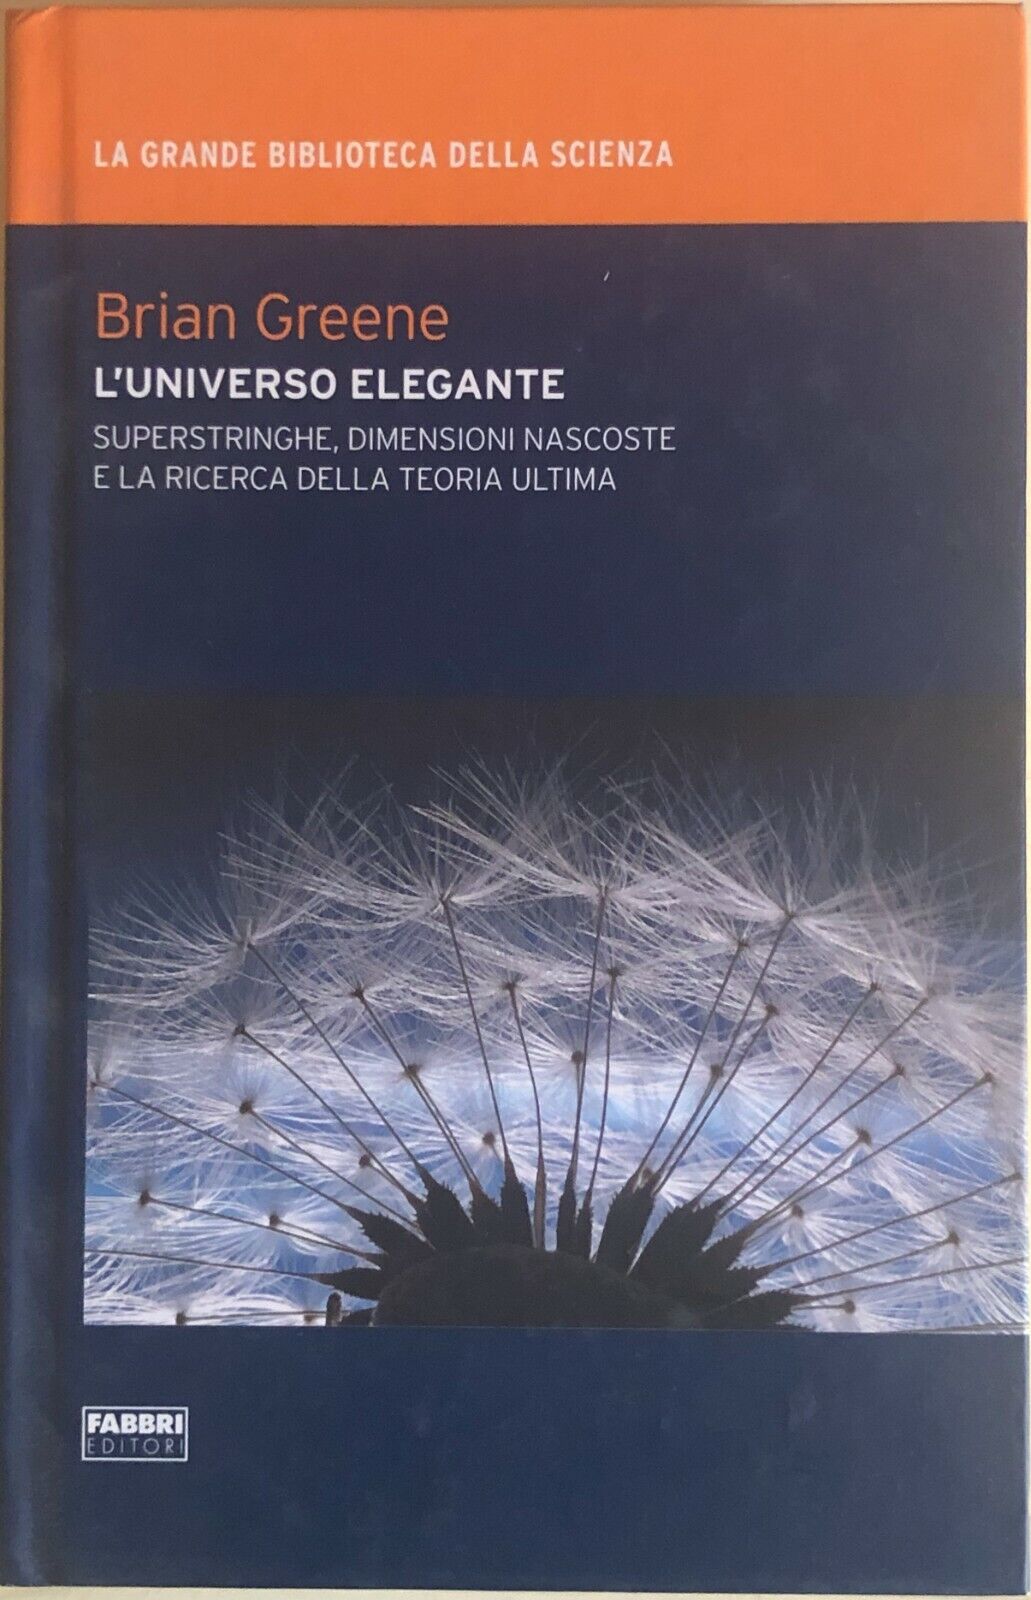 L'universo elegante di Brian Greene, 2009, Fabbri editori